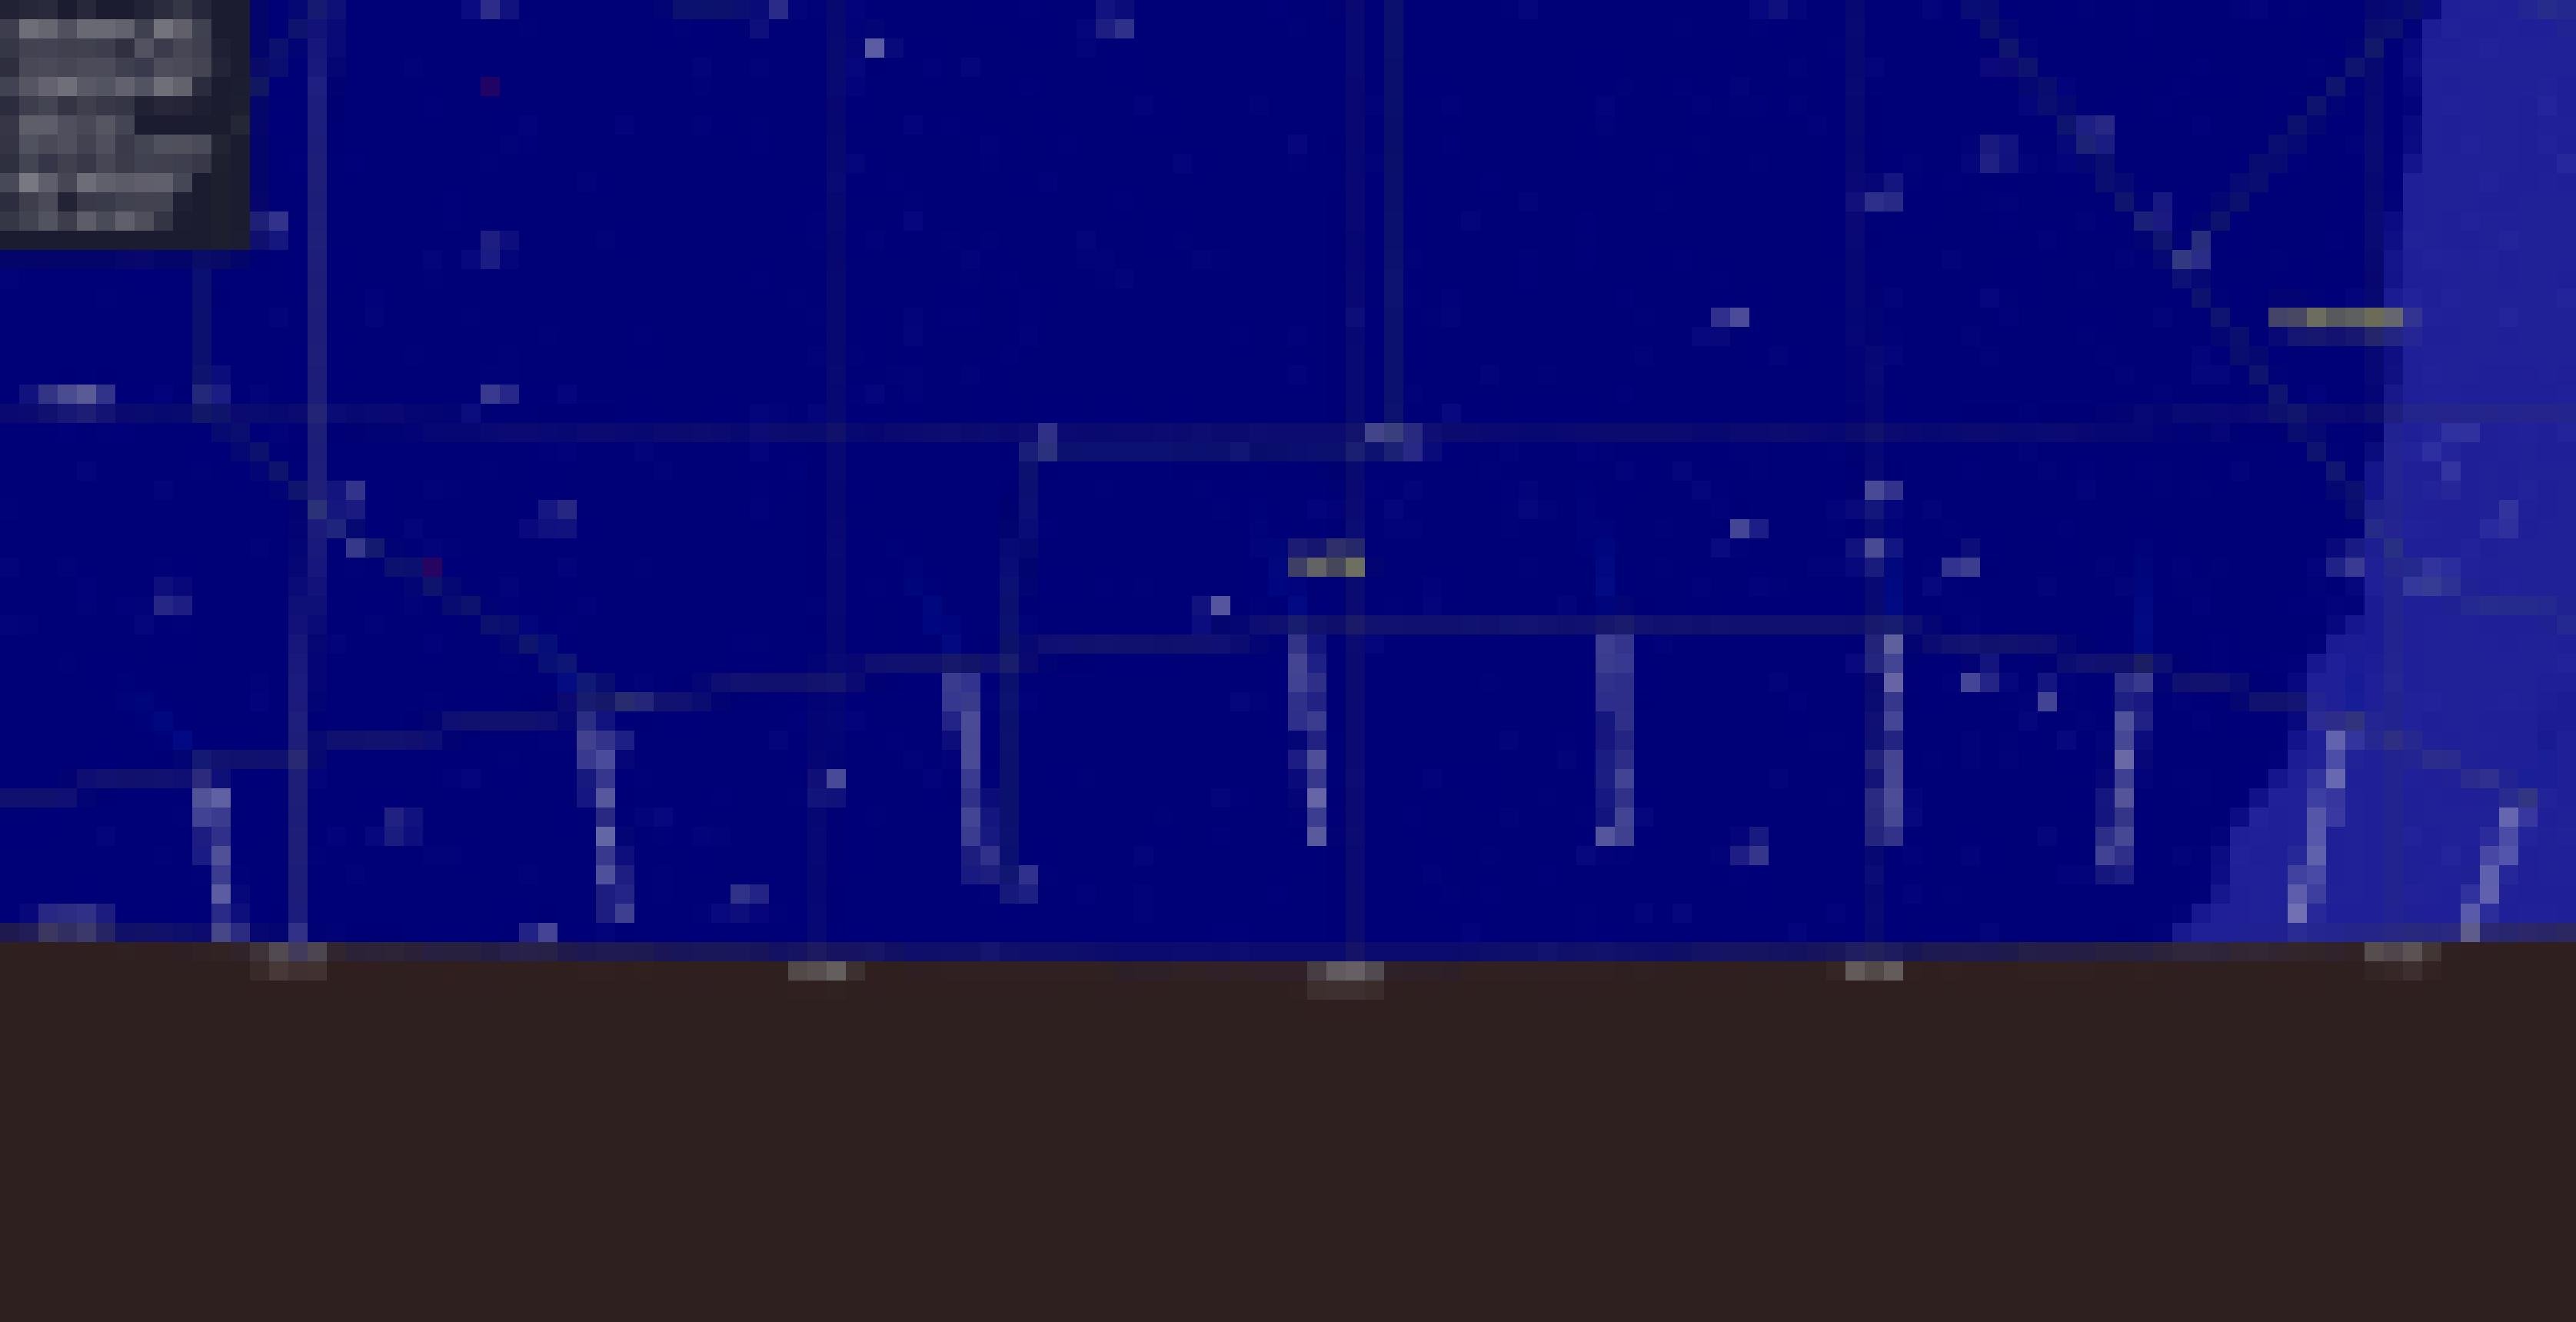 Die Himmelskarte zeigt die Positionen des Kometen C/2020 F3 in den frühen Morgenstunden im Monat Juli.